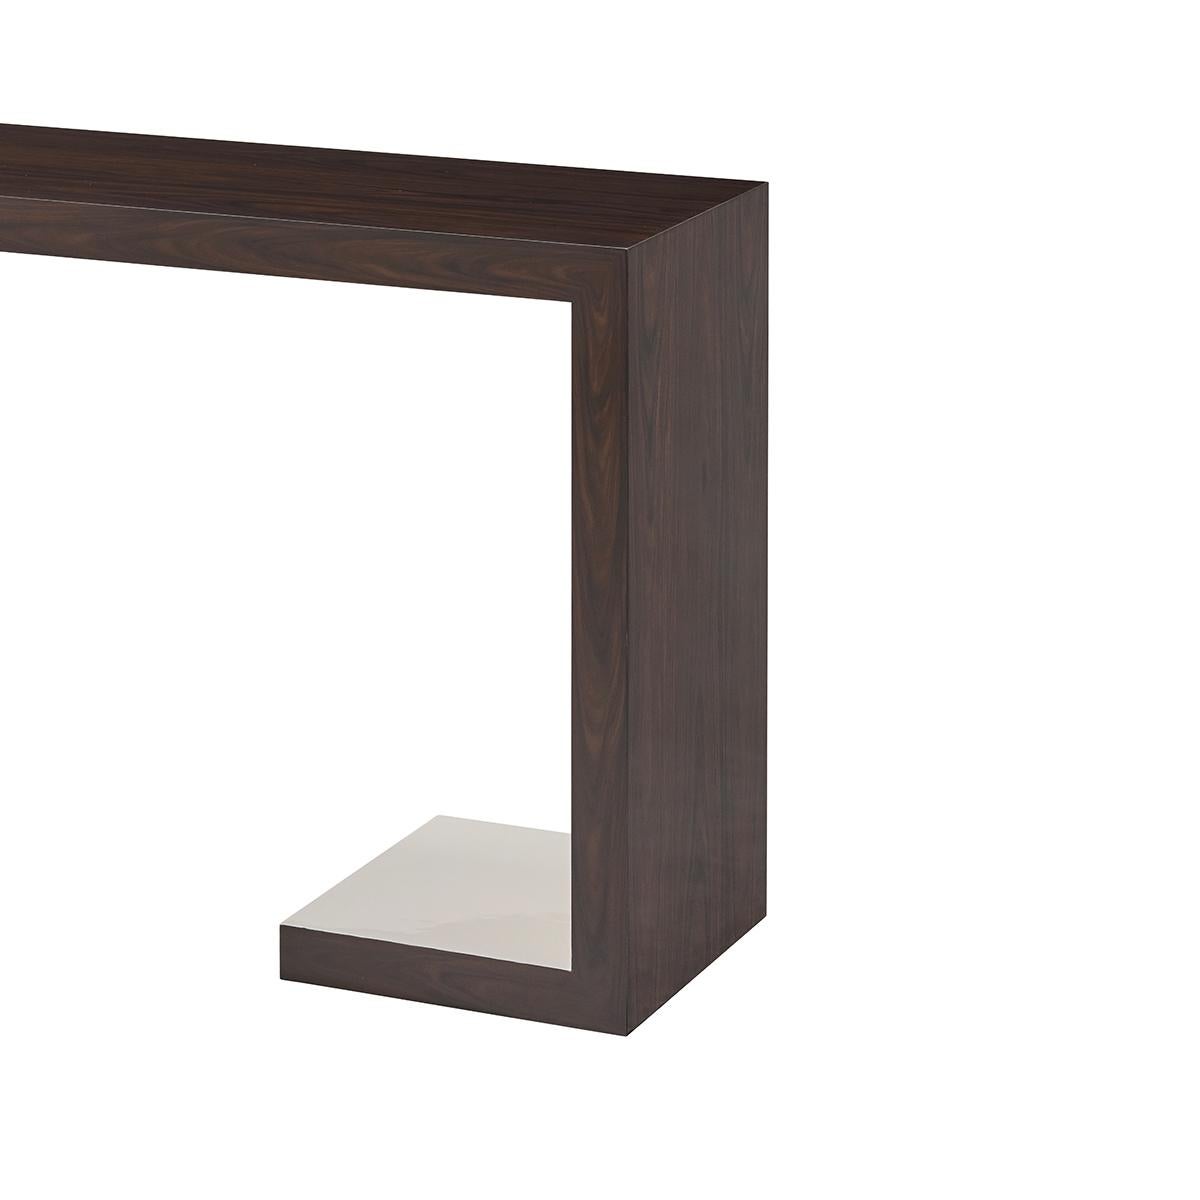 Simple et élégante, cette table console moderne est encadrée d'un extérieur plaqué Morado et présente une finition intérieure en laque blanche matinée.

Dimensions : 65